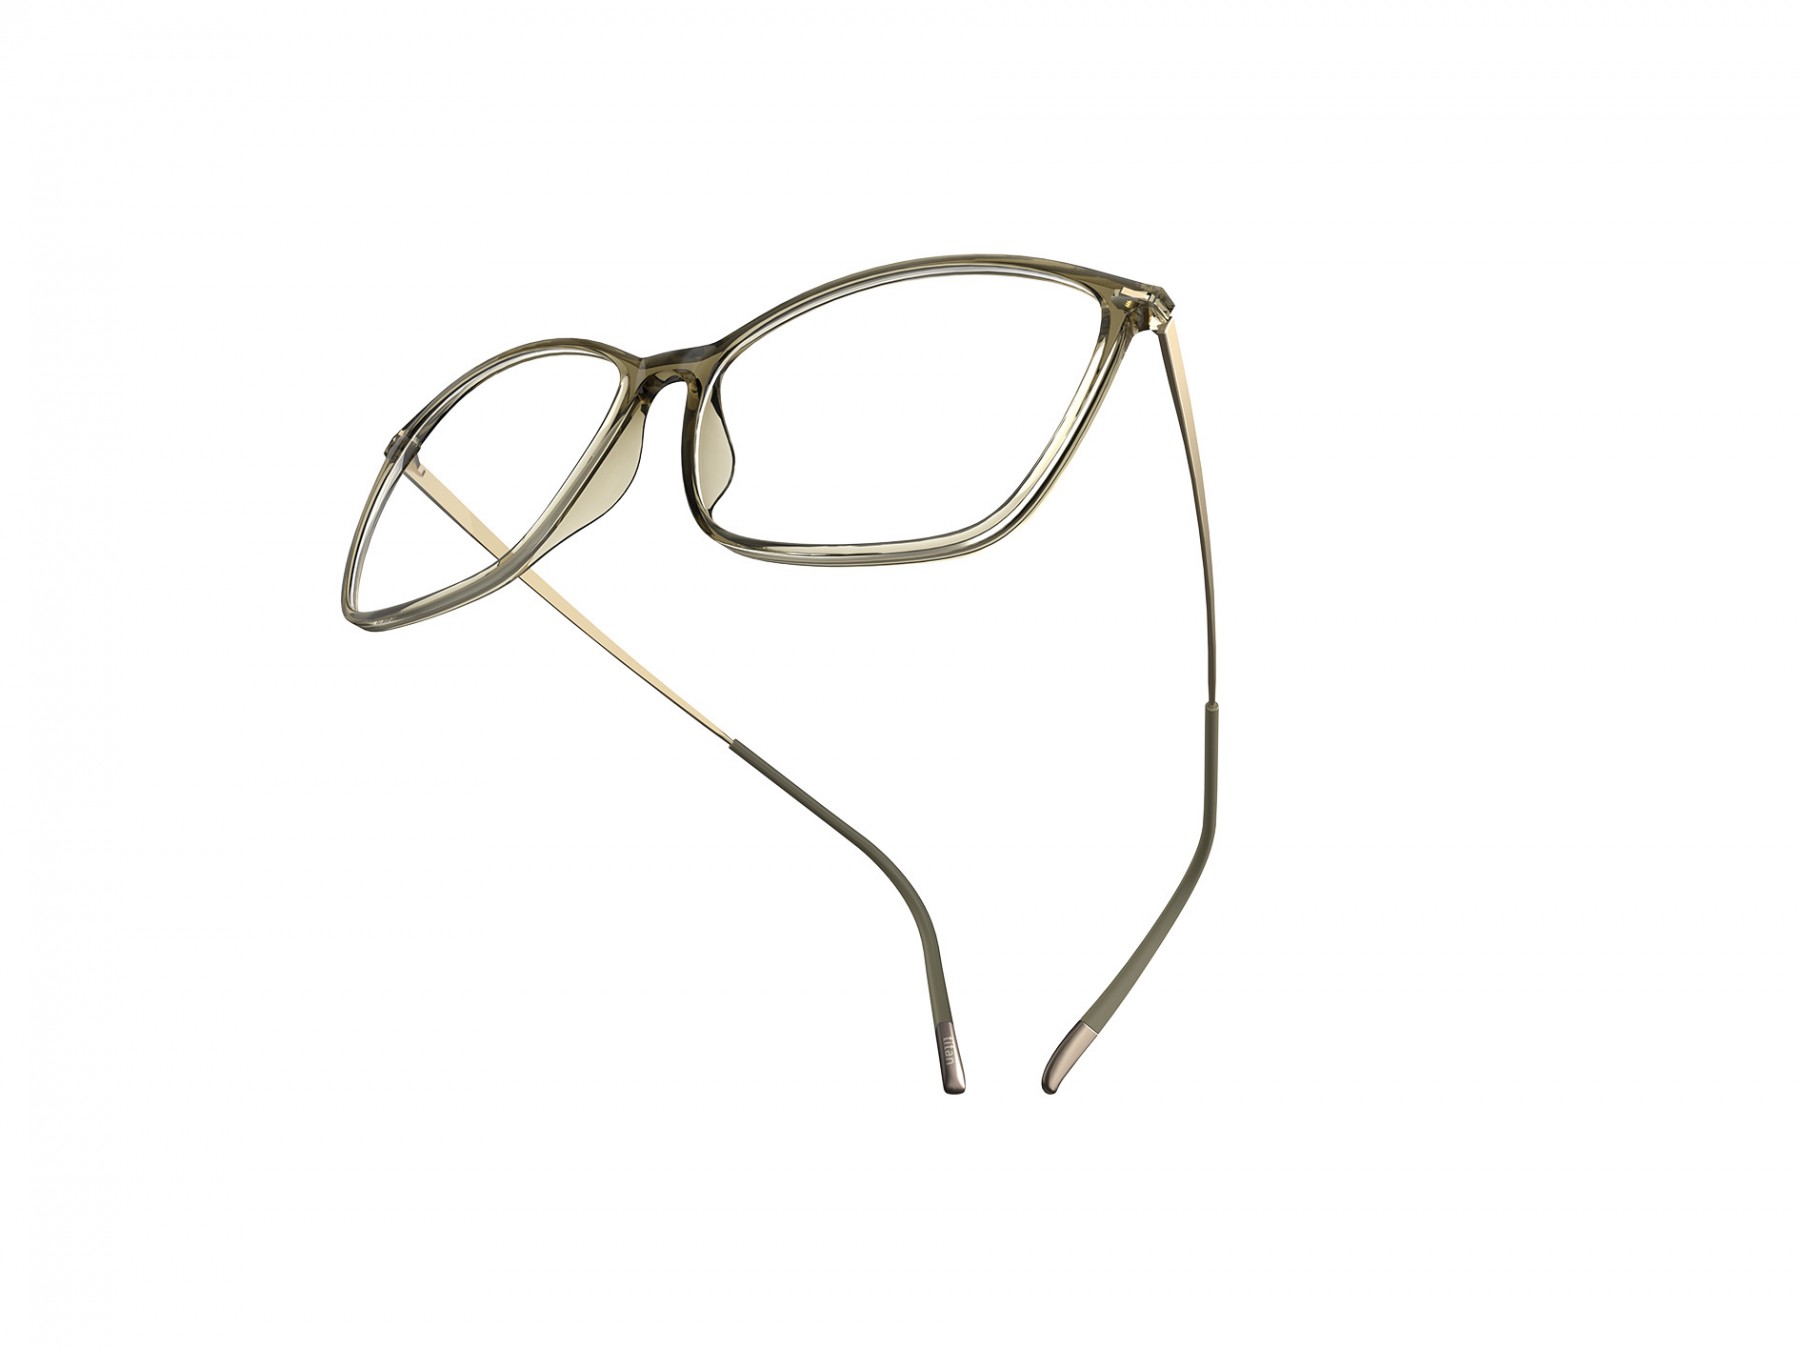 Silhouette 1598 5540 - Oculos de Grau